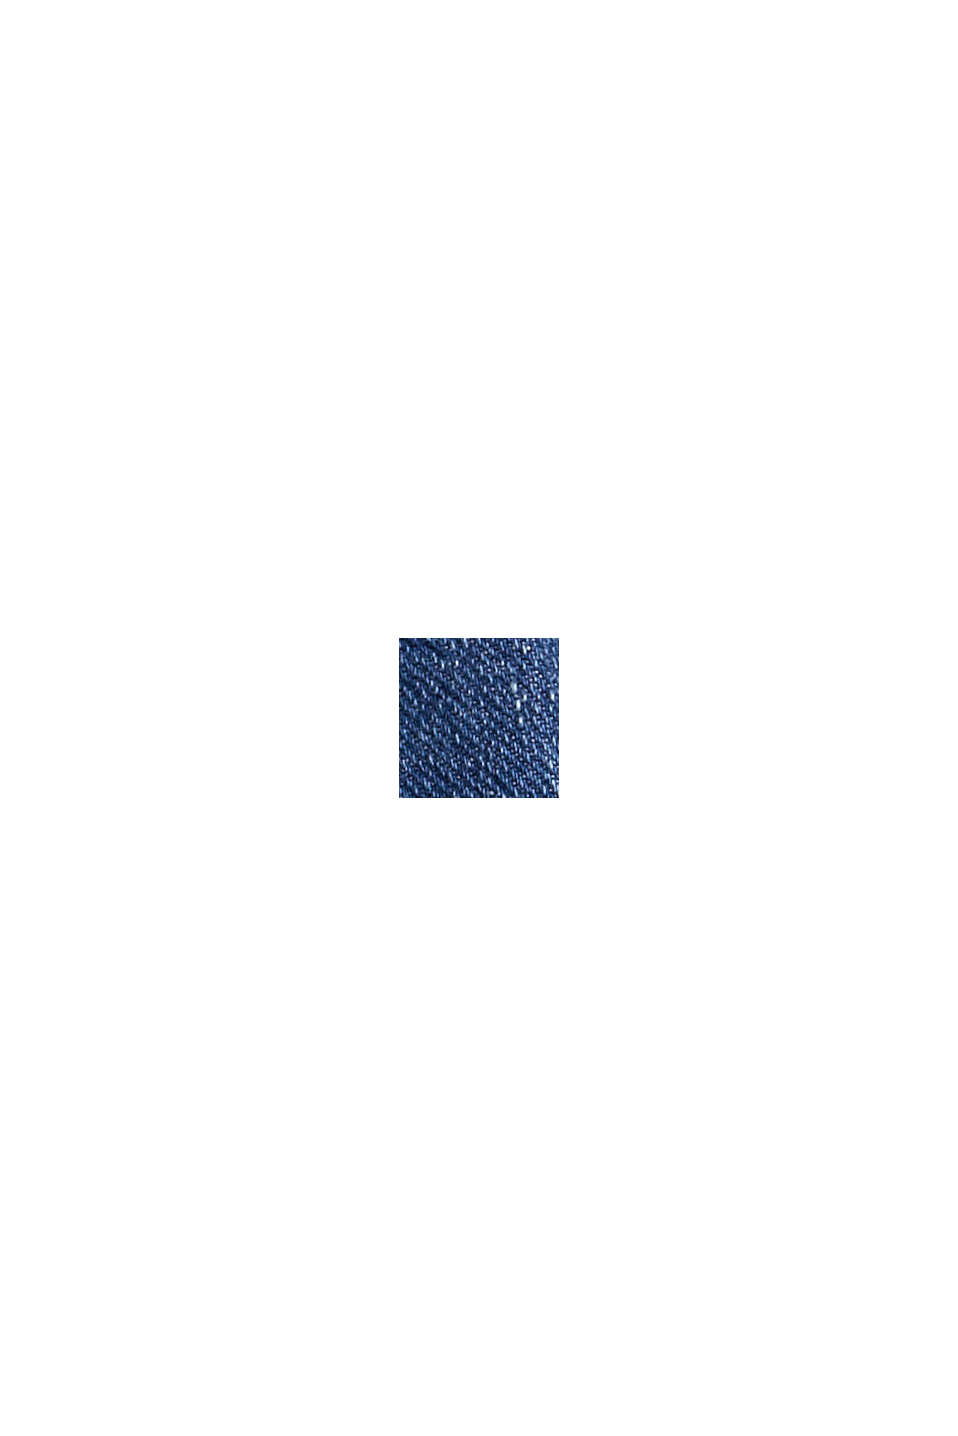 Bootcut džíny s nakládanými kapsami, BLUE MEDIUM WASHED, swatch